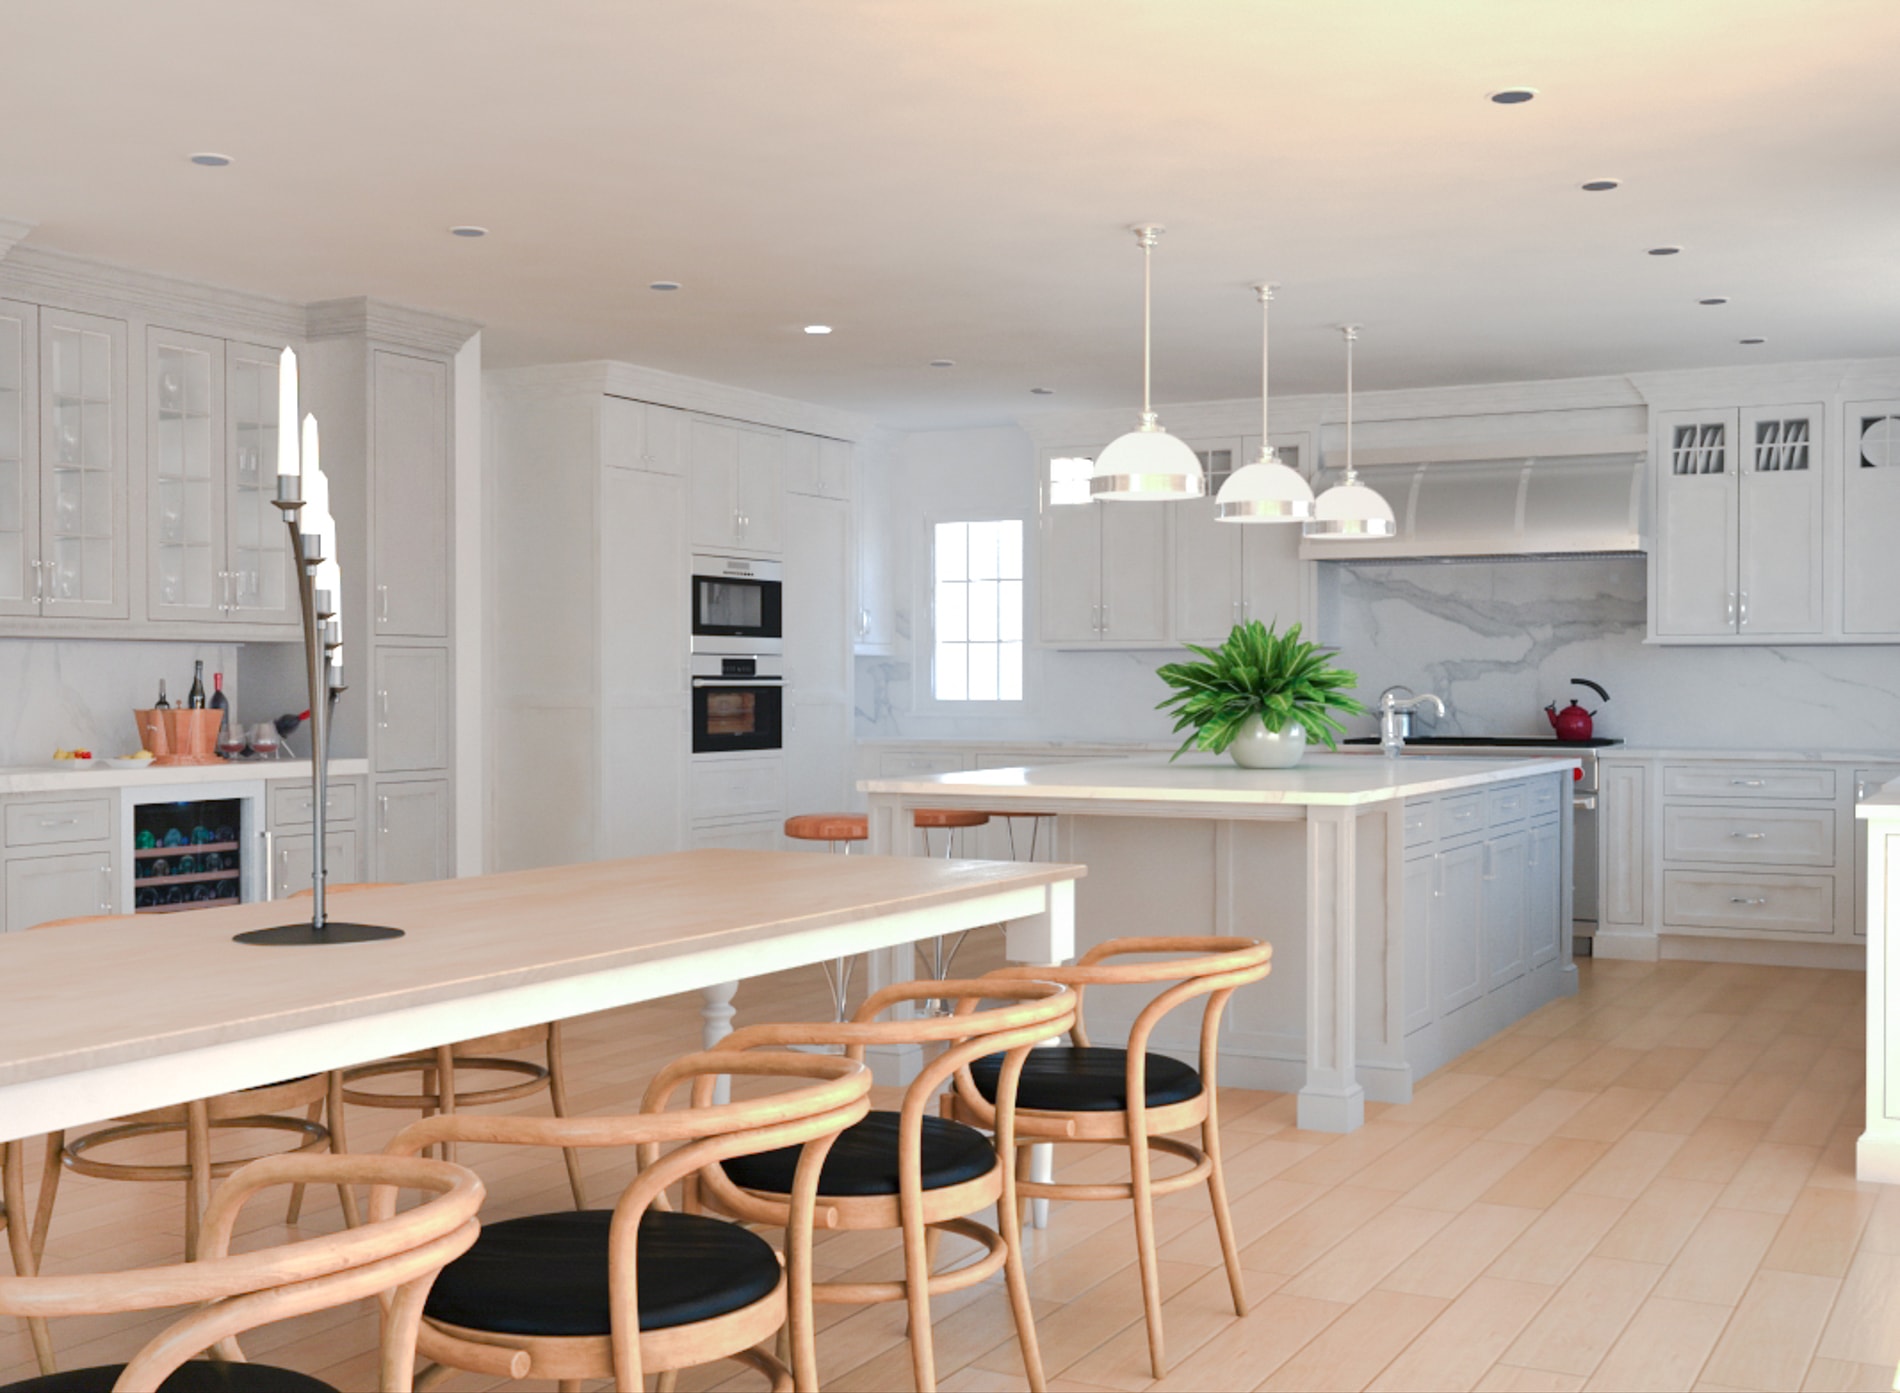 varista design modular kitchen interior designs